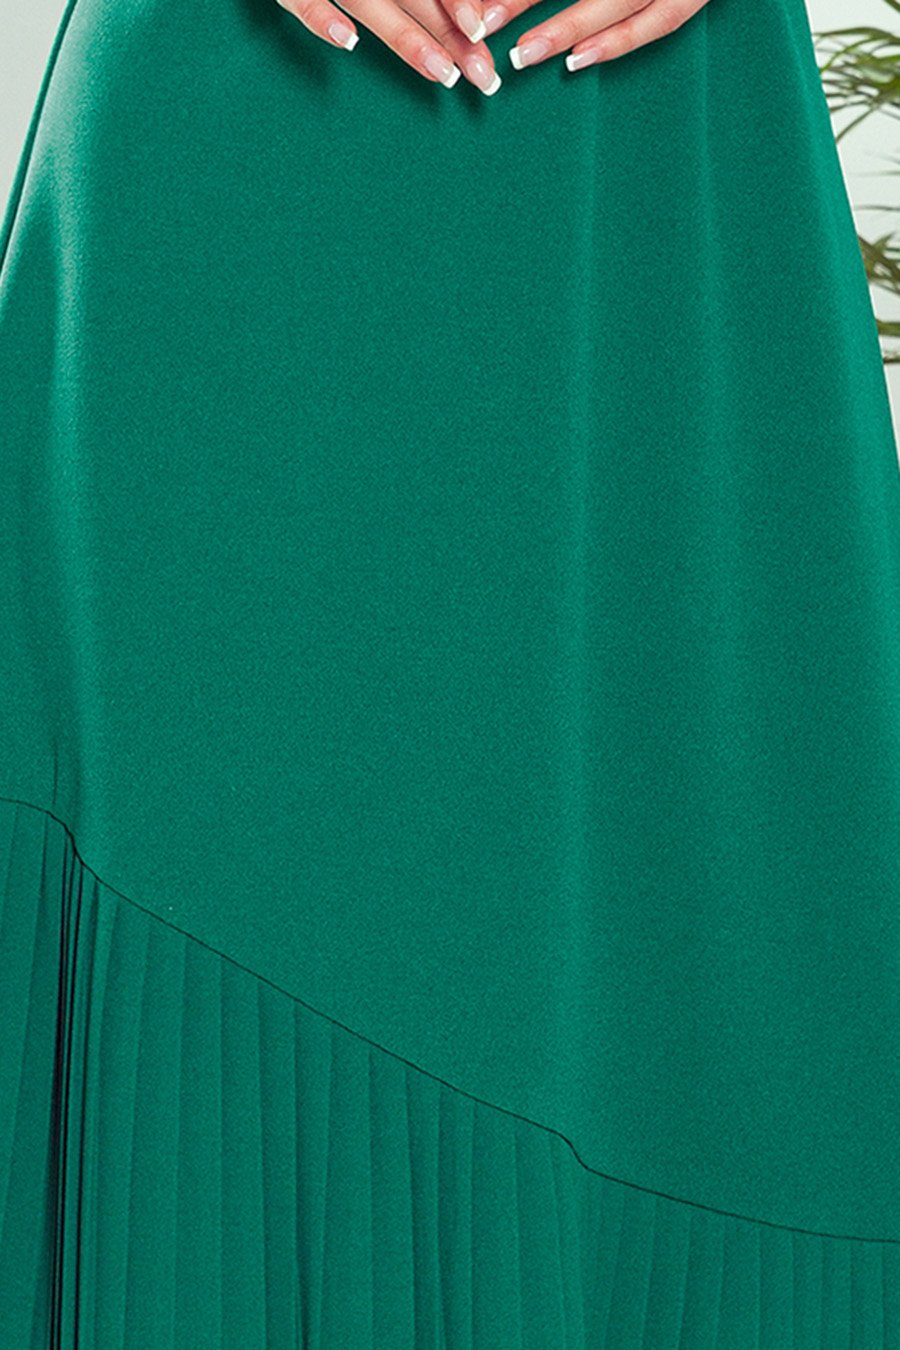 Γυναικείο φόρεμα Kamora, Πράσινο 7